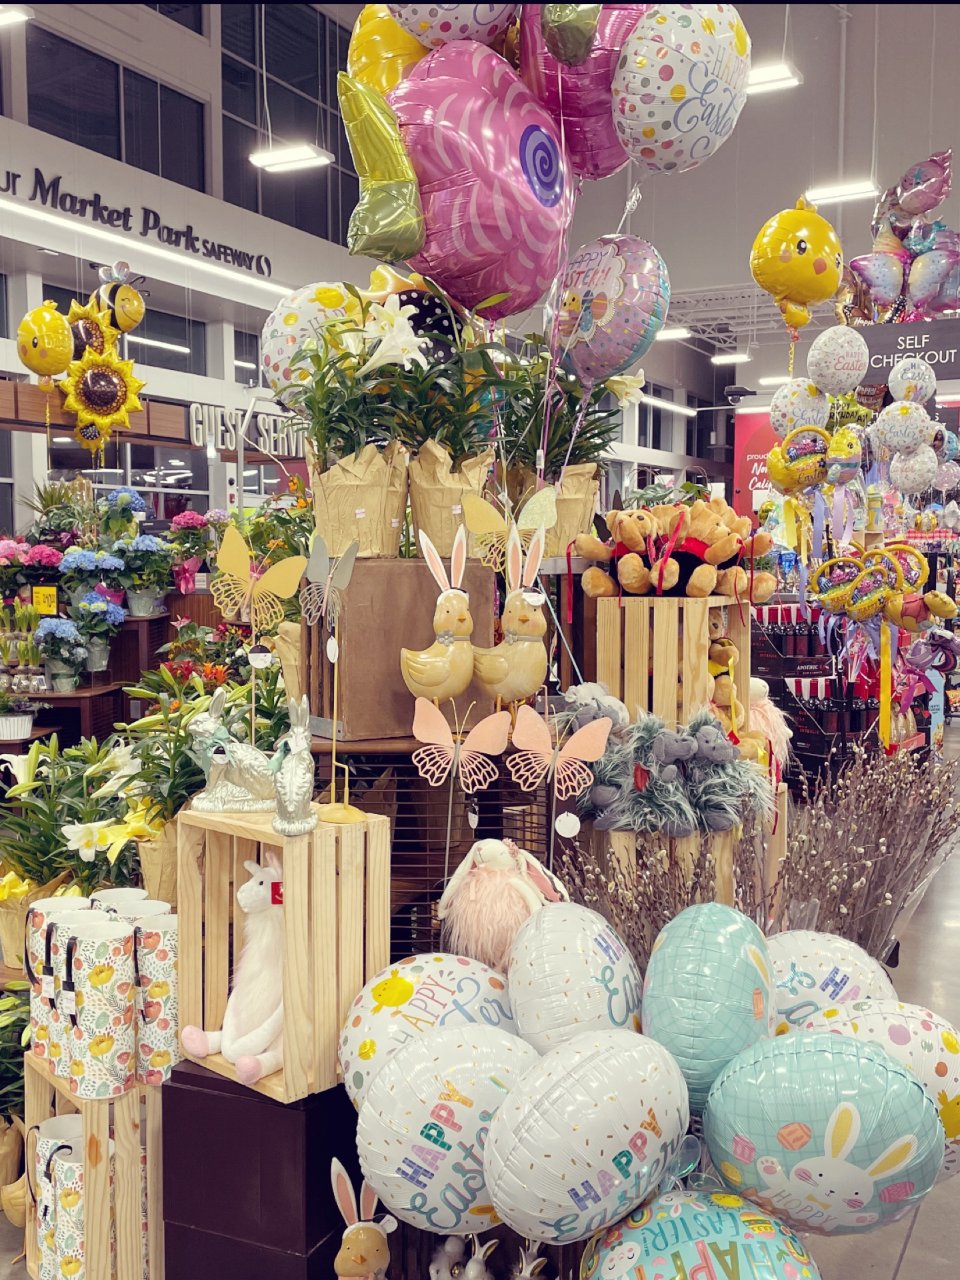 晒复活节—西人超市里复活节气氛。...